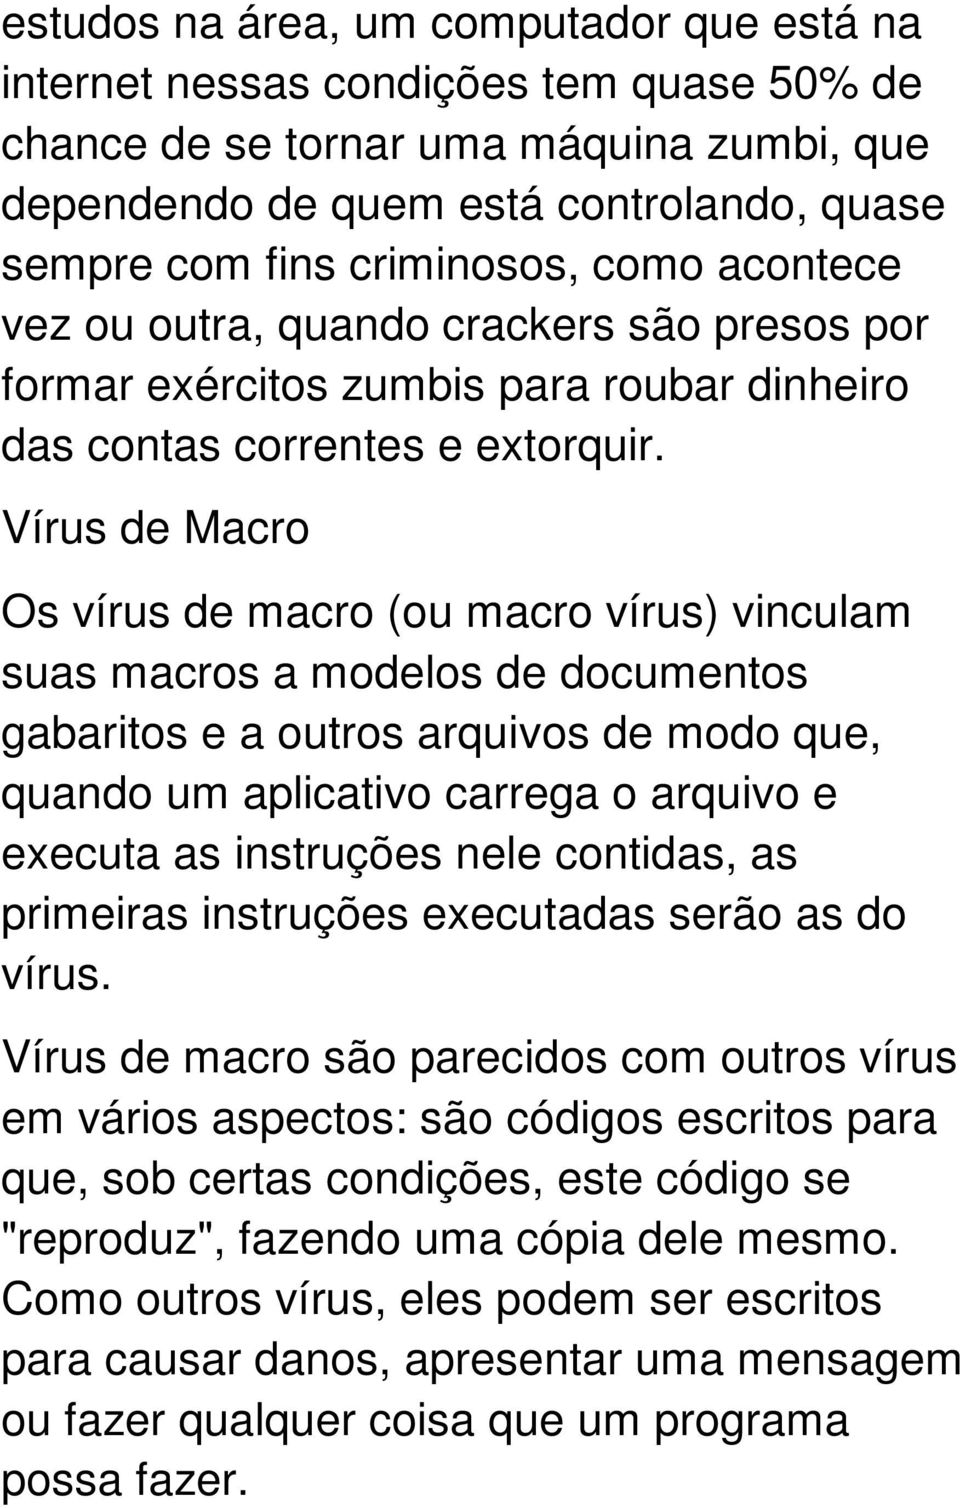 Vírus de Macro Os vírus de macro (ou macro vírus) vinculam suas macros a modelos de documentos gabaritos e a outros arquivos de modo que, quando um aplicativo carrega o arquivo e executa as